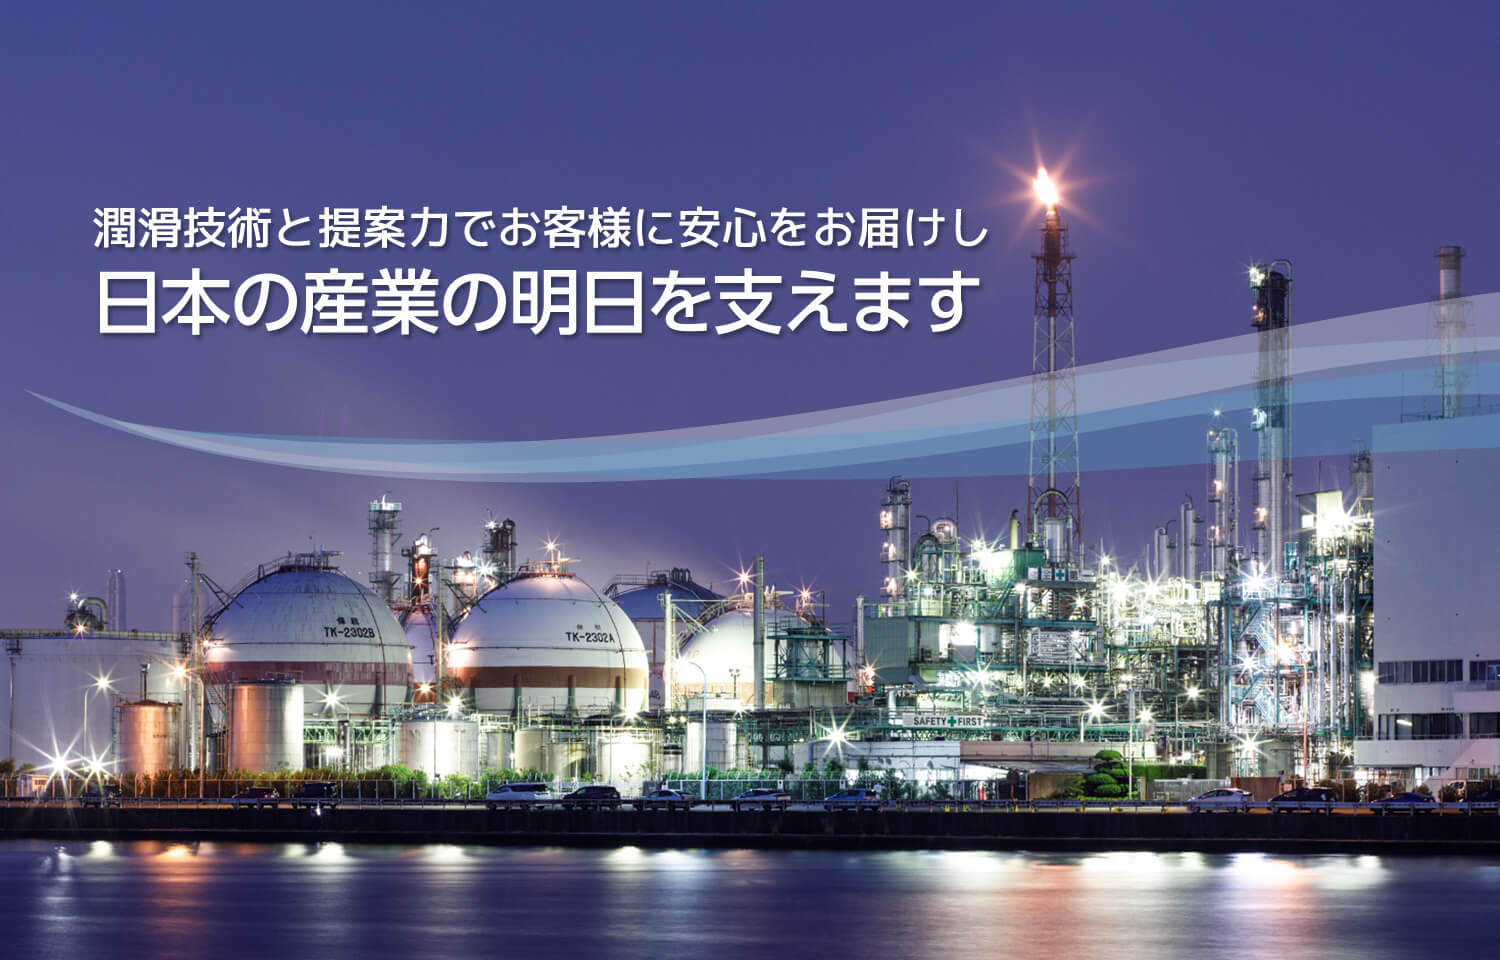 産業ビジネス 潤滑技術と提案力でお客様に安心をお届けし、日本の産業の明日を支えます。